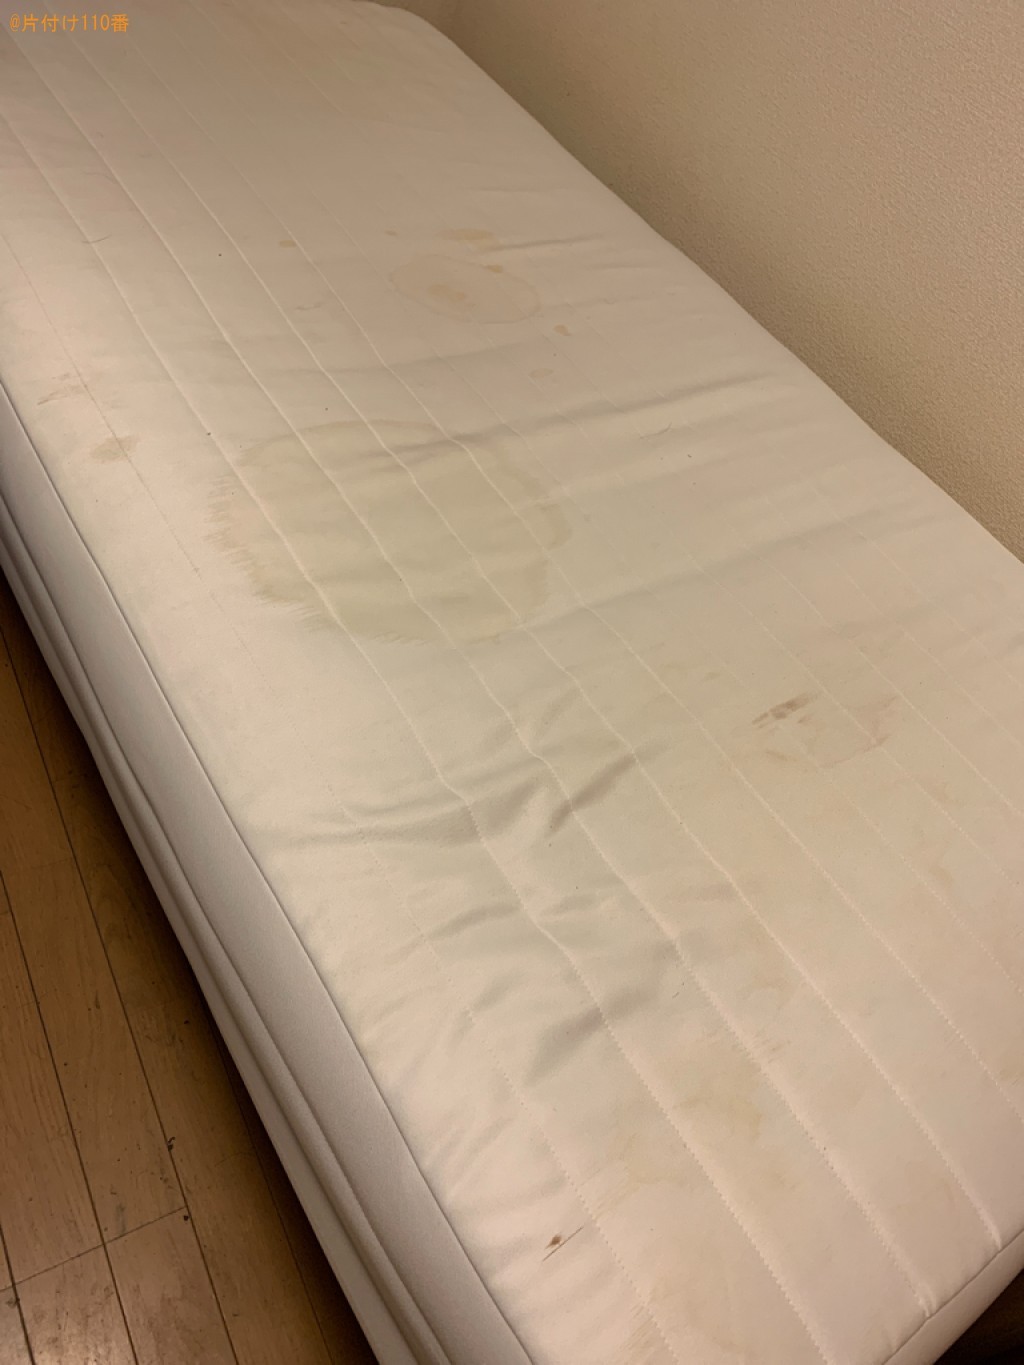 【北九州市若松区】シングルベッドの出張不用品回収・処分ご依頼